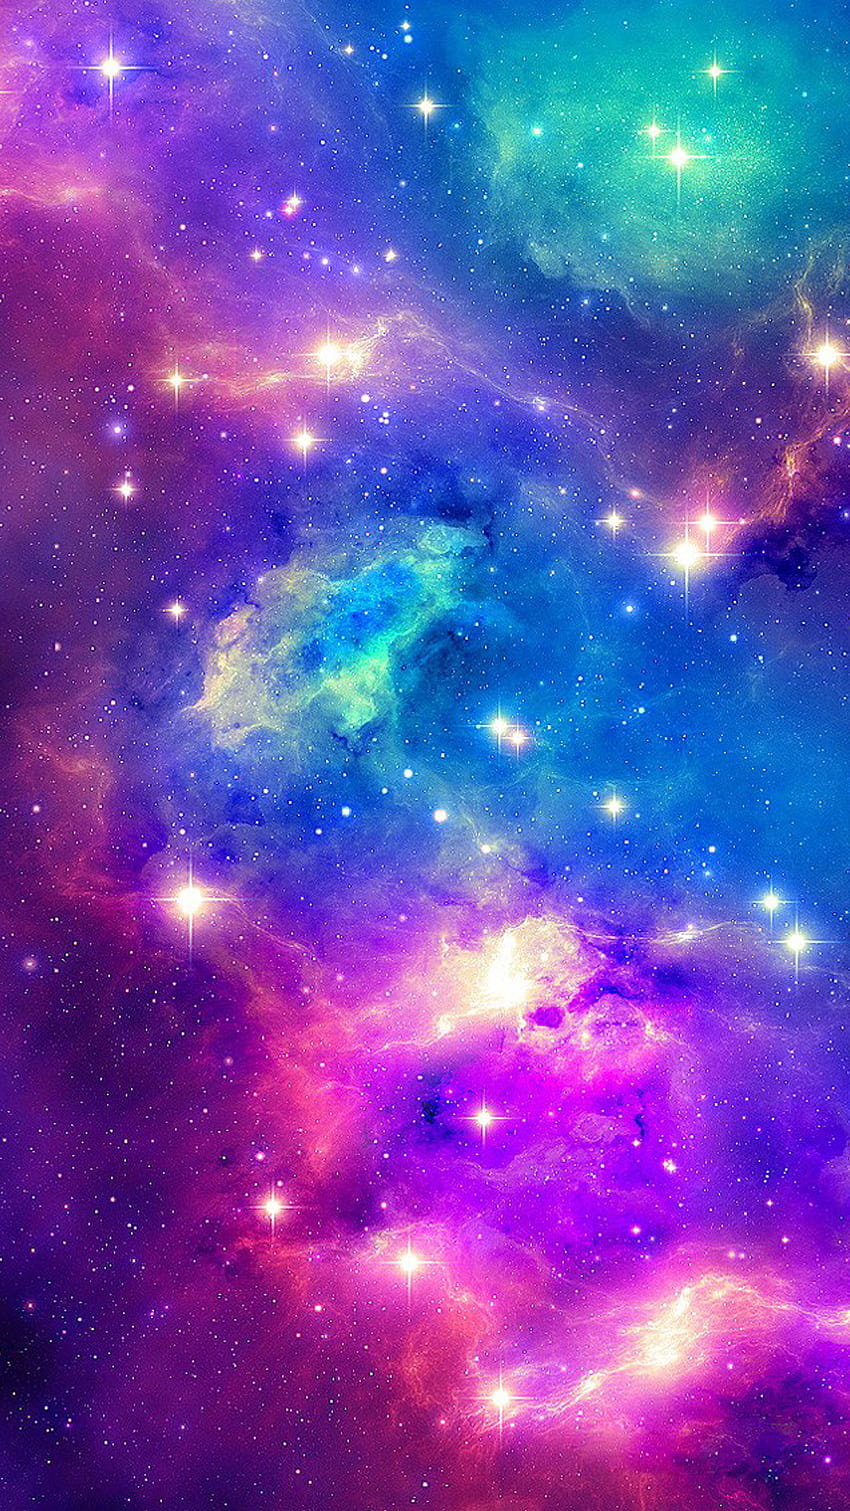 Nền mạng ngân hà màu xanh tím đẹp: Cùng khám phá thiên đường màu xanh tím của vũ trụ với nền mạng ngân hà đầy mê hoặc này. Tạo nên từ những đám mây khí và sự thăng hoa của các ngôi sao, nét đẹp của nền này sẽ làm bạn bị thu hút, muốn ngập tràn trong những vùng vũ trụ kì diệu.